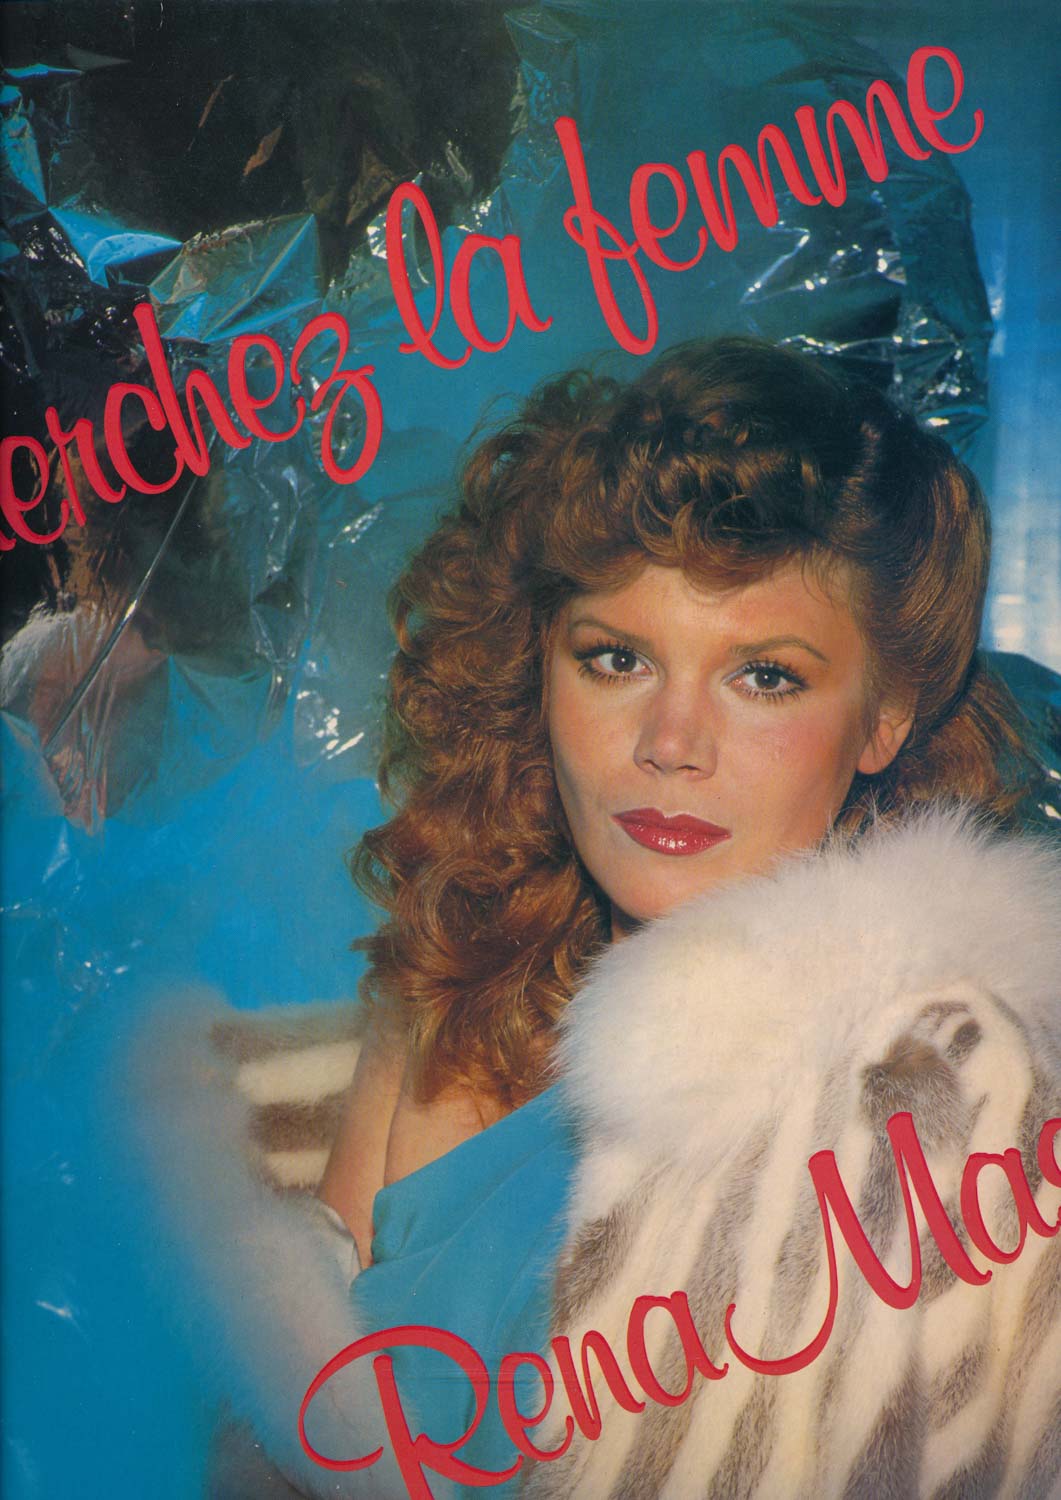 Rena Mason  Cherchez la Femme! (1C 064-62 949)  *LP 12'' (Vinyl)*. 